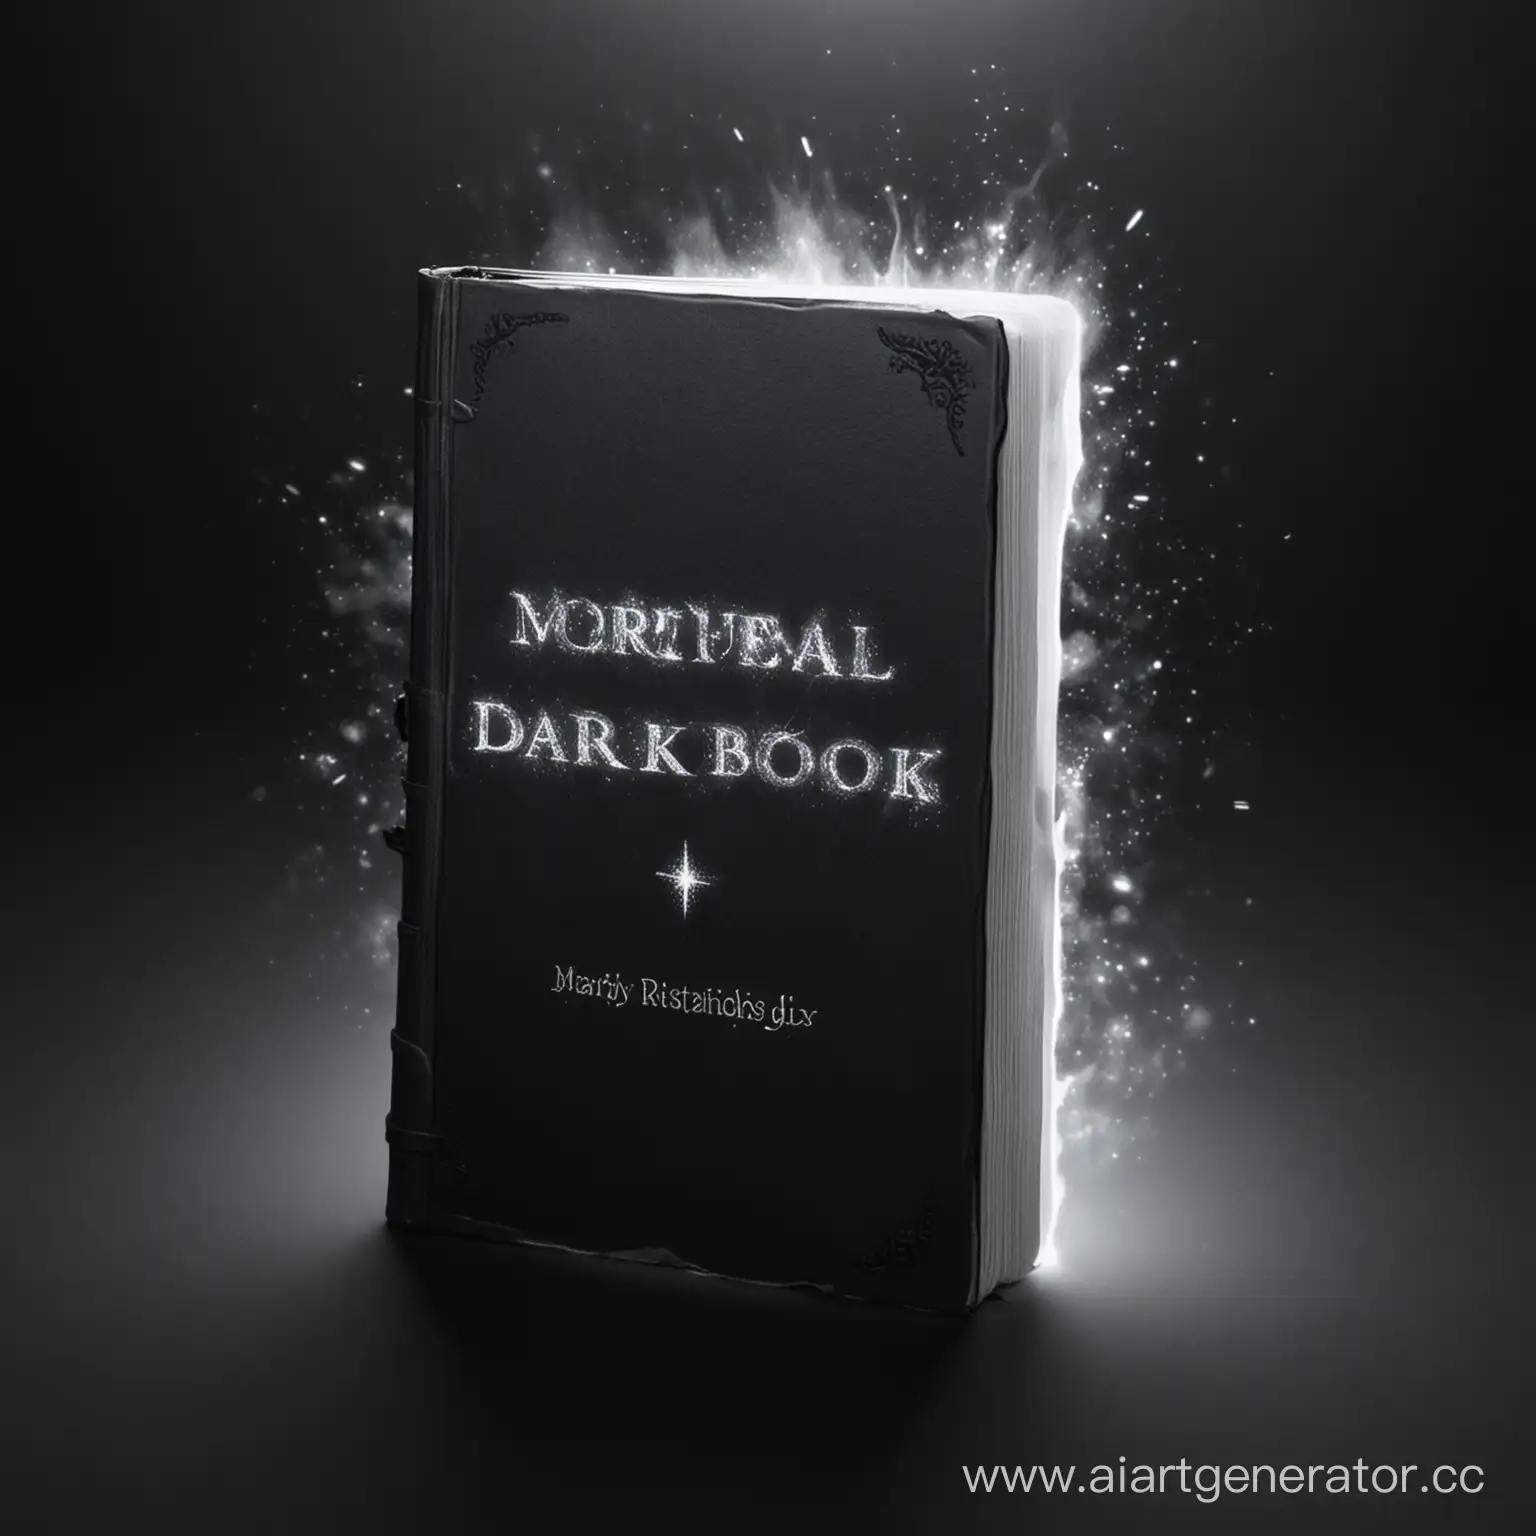 Тёмная минималистичная книга, белое яркое сияние, надпись "DARKBOOK", спецэффекты